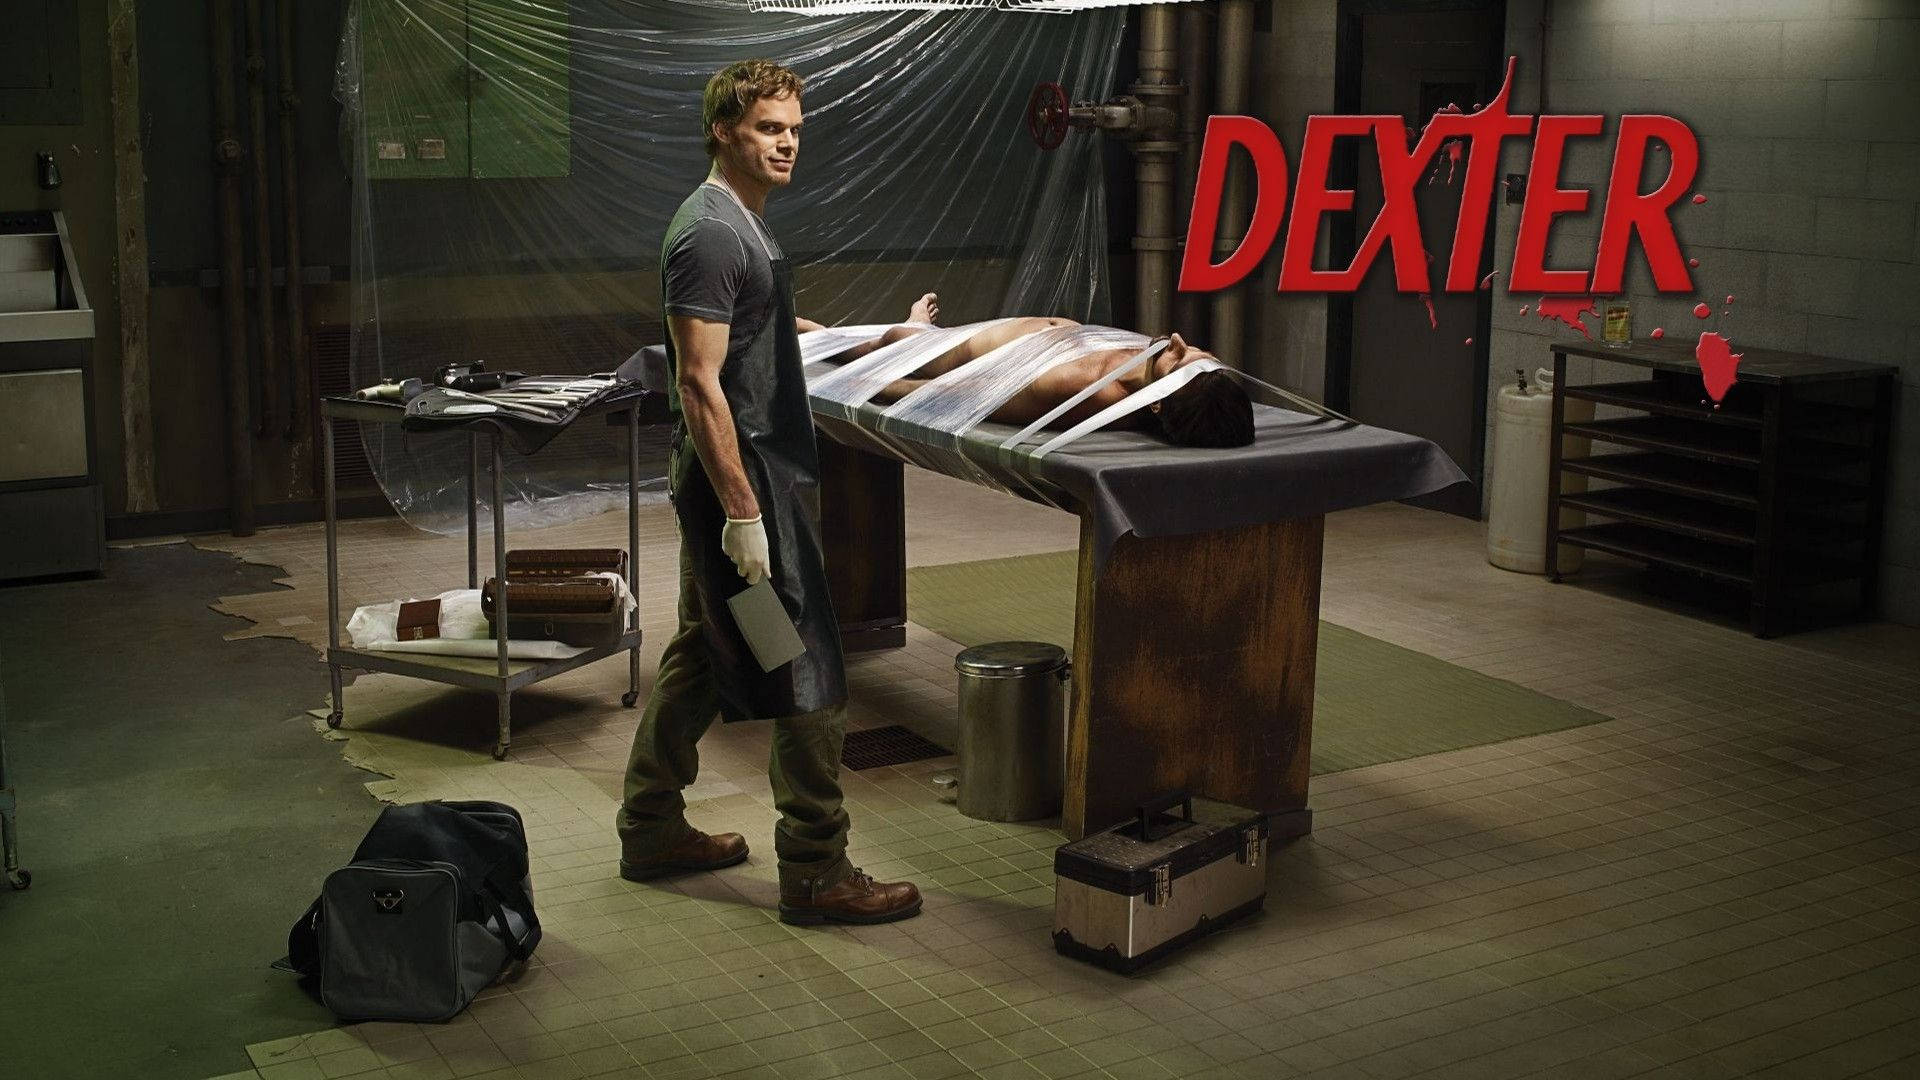 Dexter Scene Villain Holding Knife Wallpaper